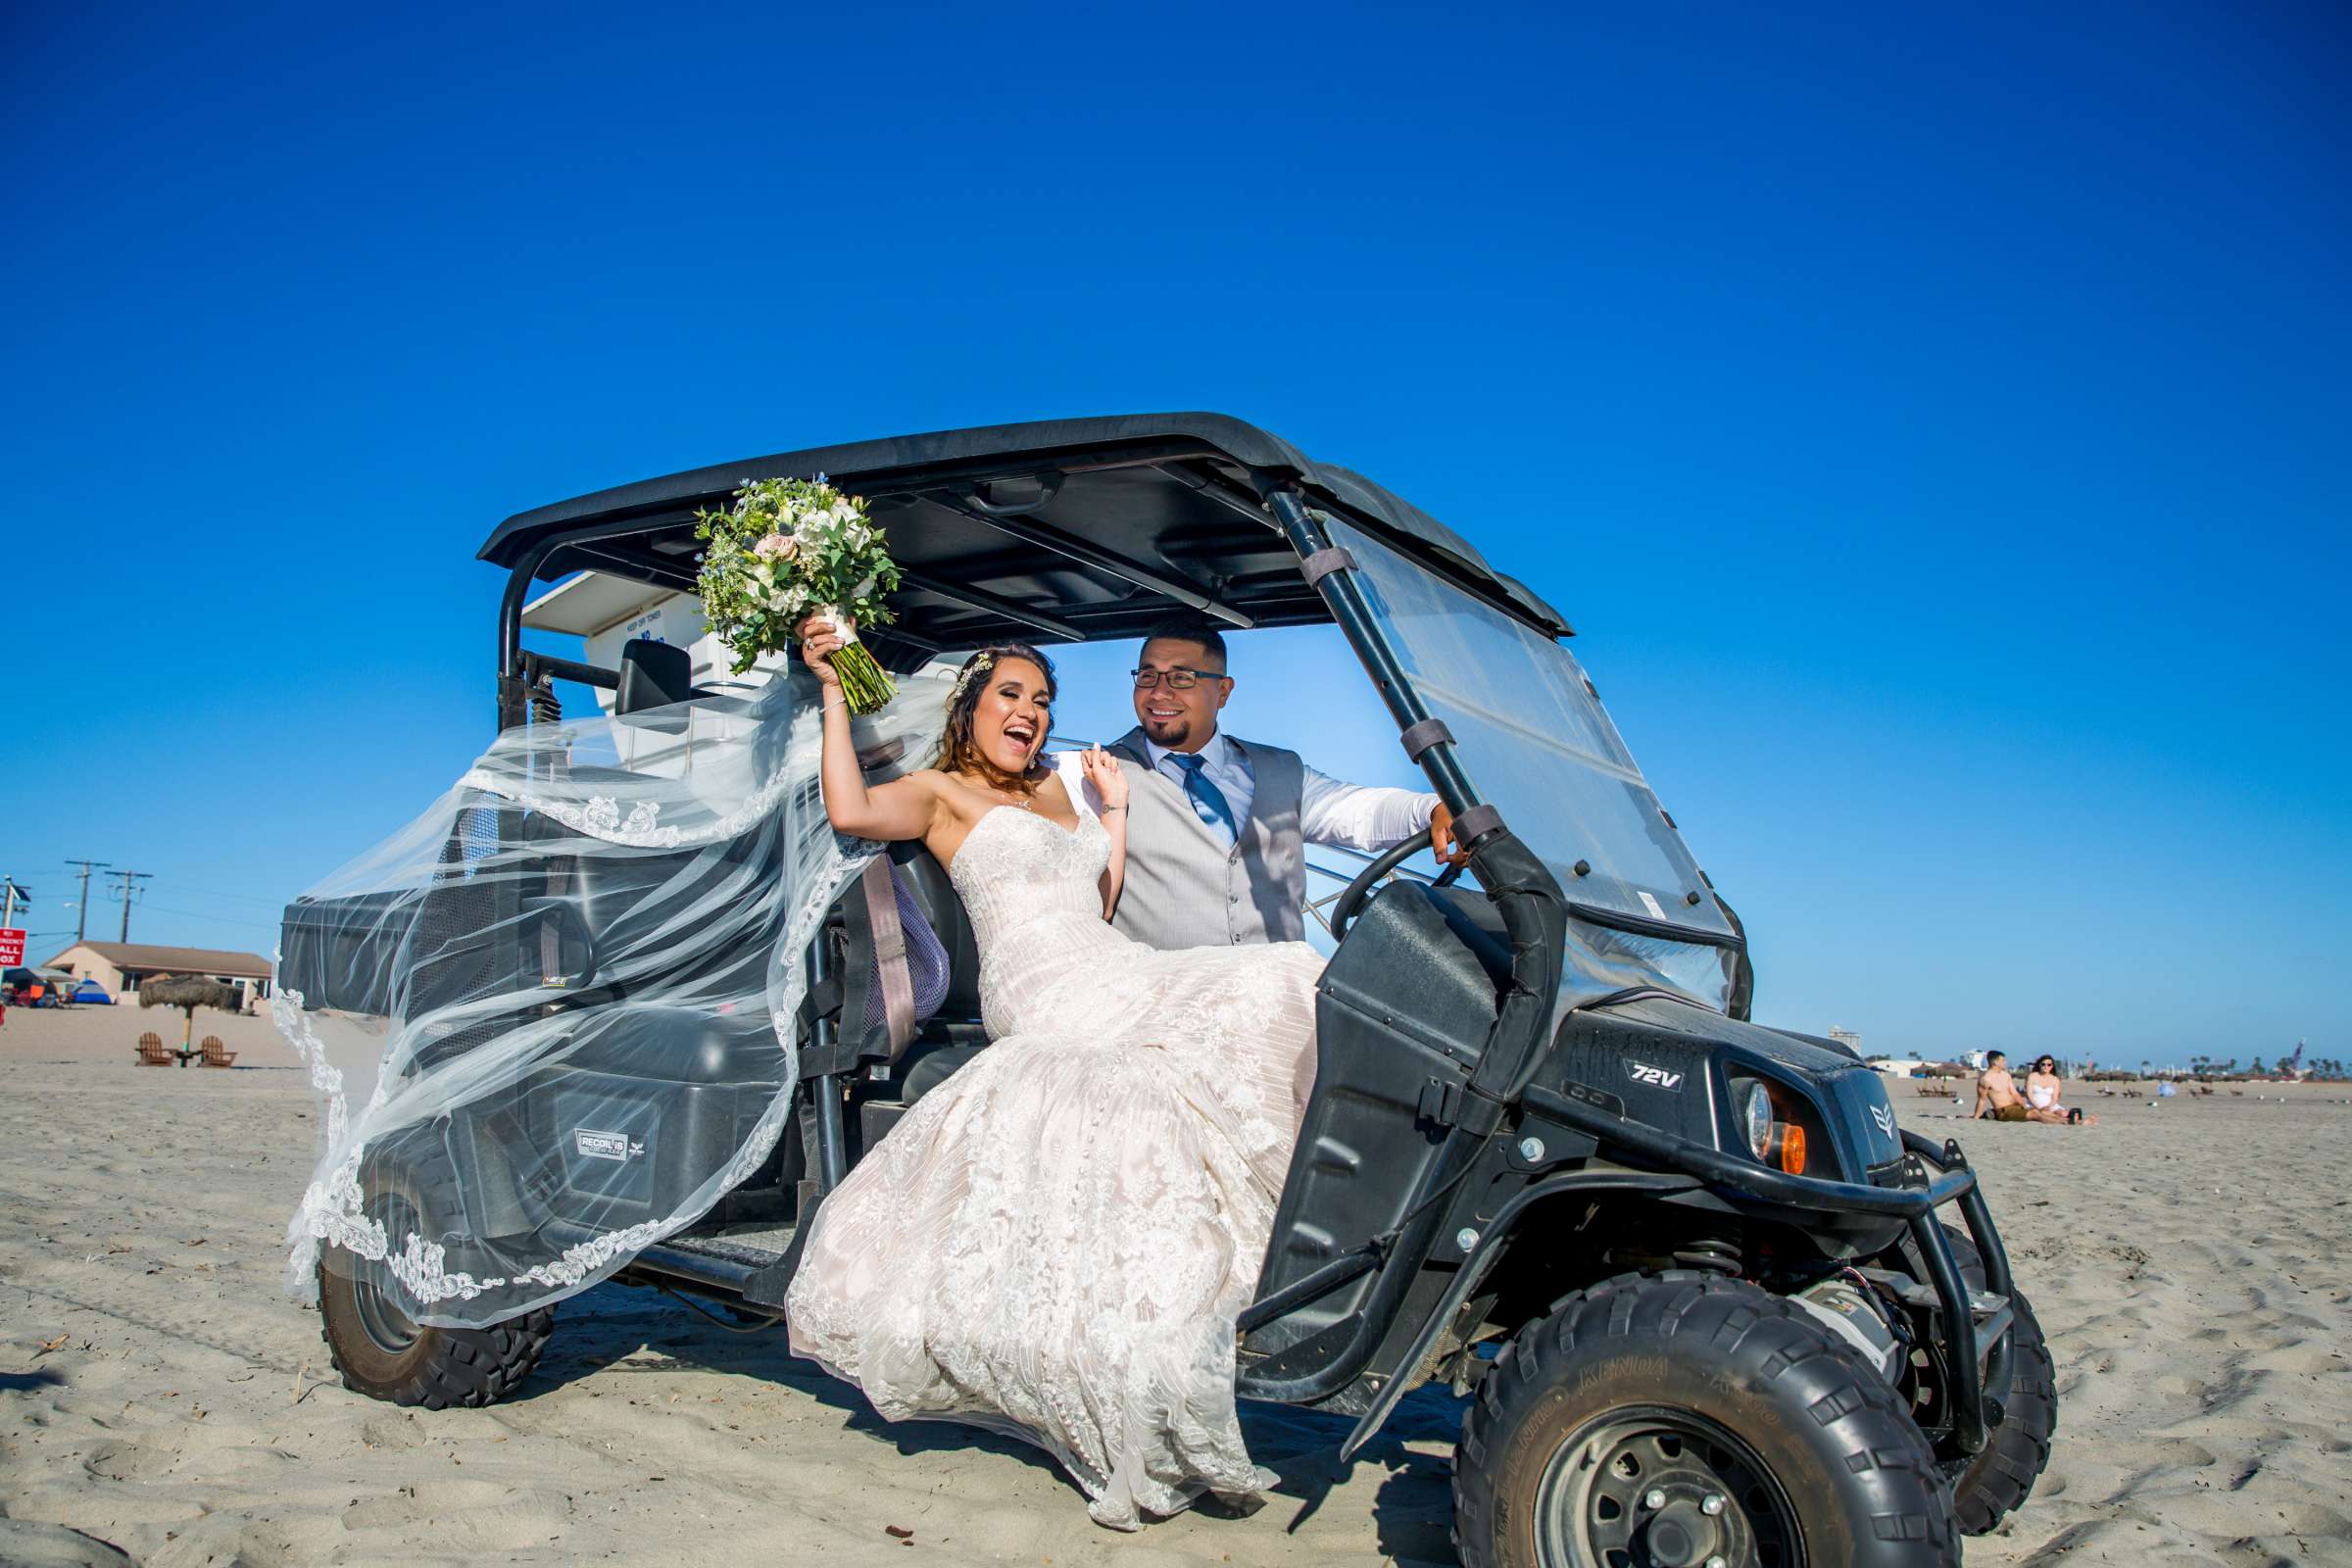 Del Mar Beach Resort Wedding coordinated by La Casa Del Mar, Alisa and Carlos Wedding Photo #380849 by True Photography